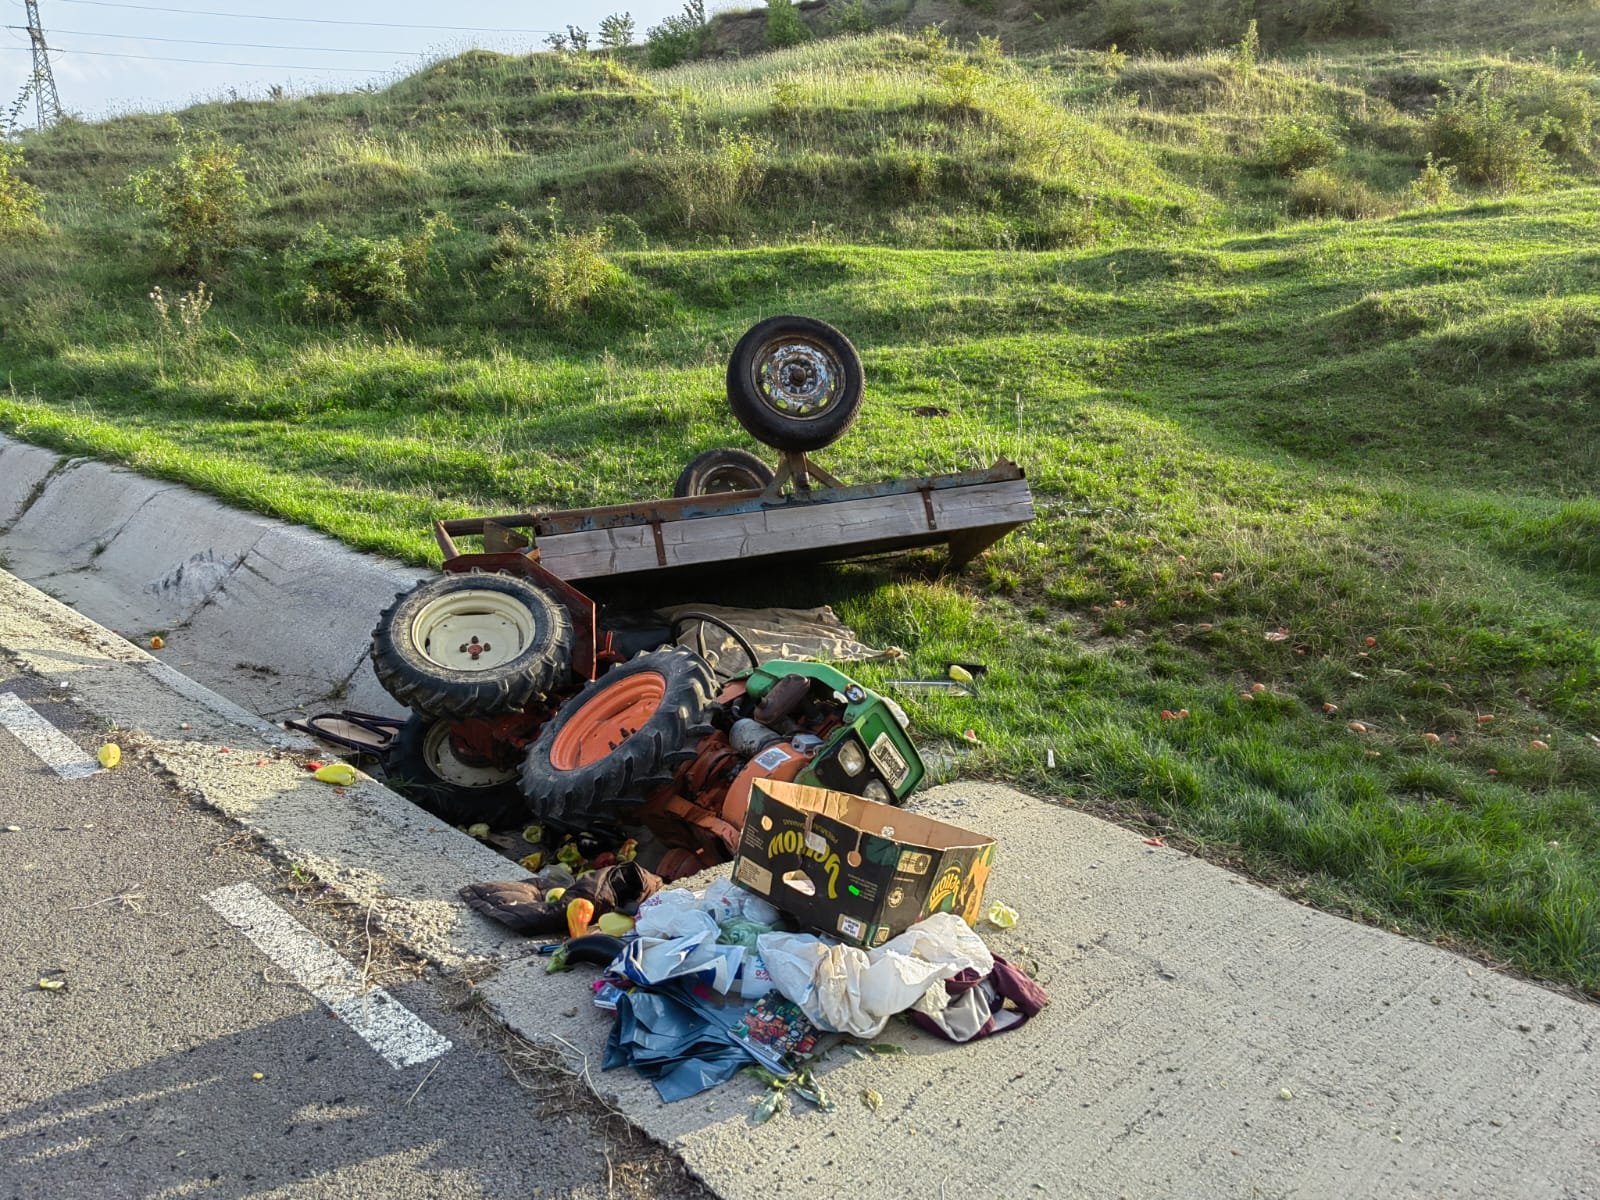  (FOTO) Accident mortal în Iaşi. Un tractor s-a răsturnat la marginea drumului